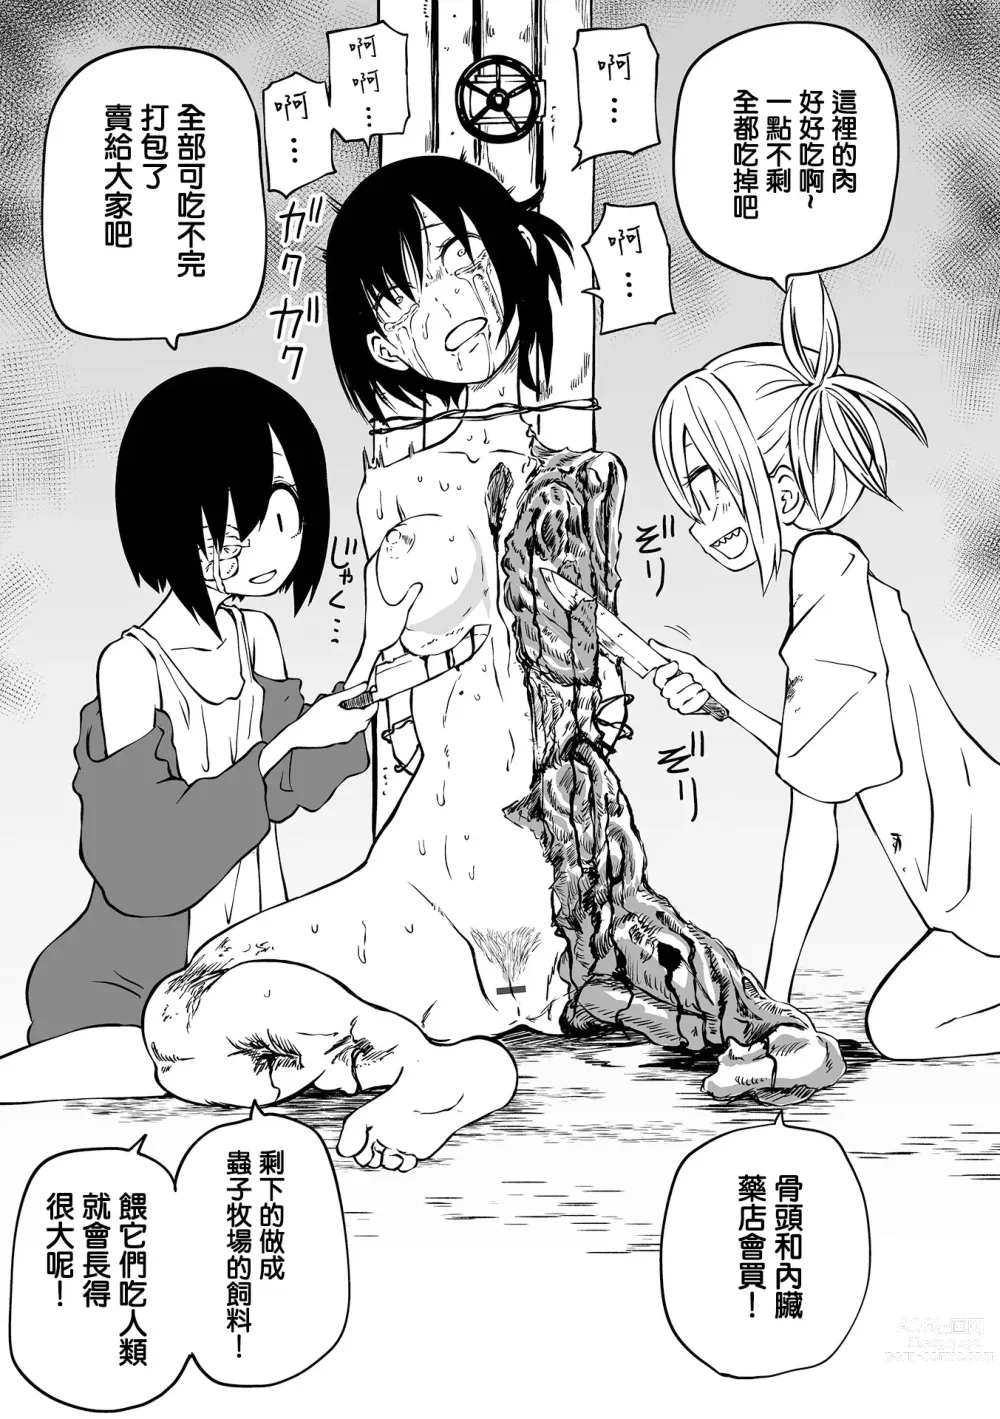 Page 14 of manga 地下生活